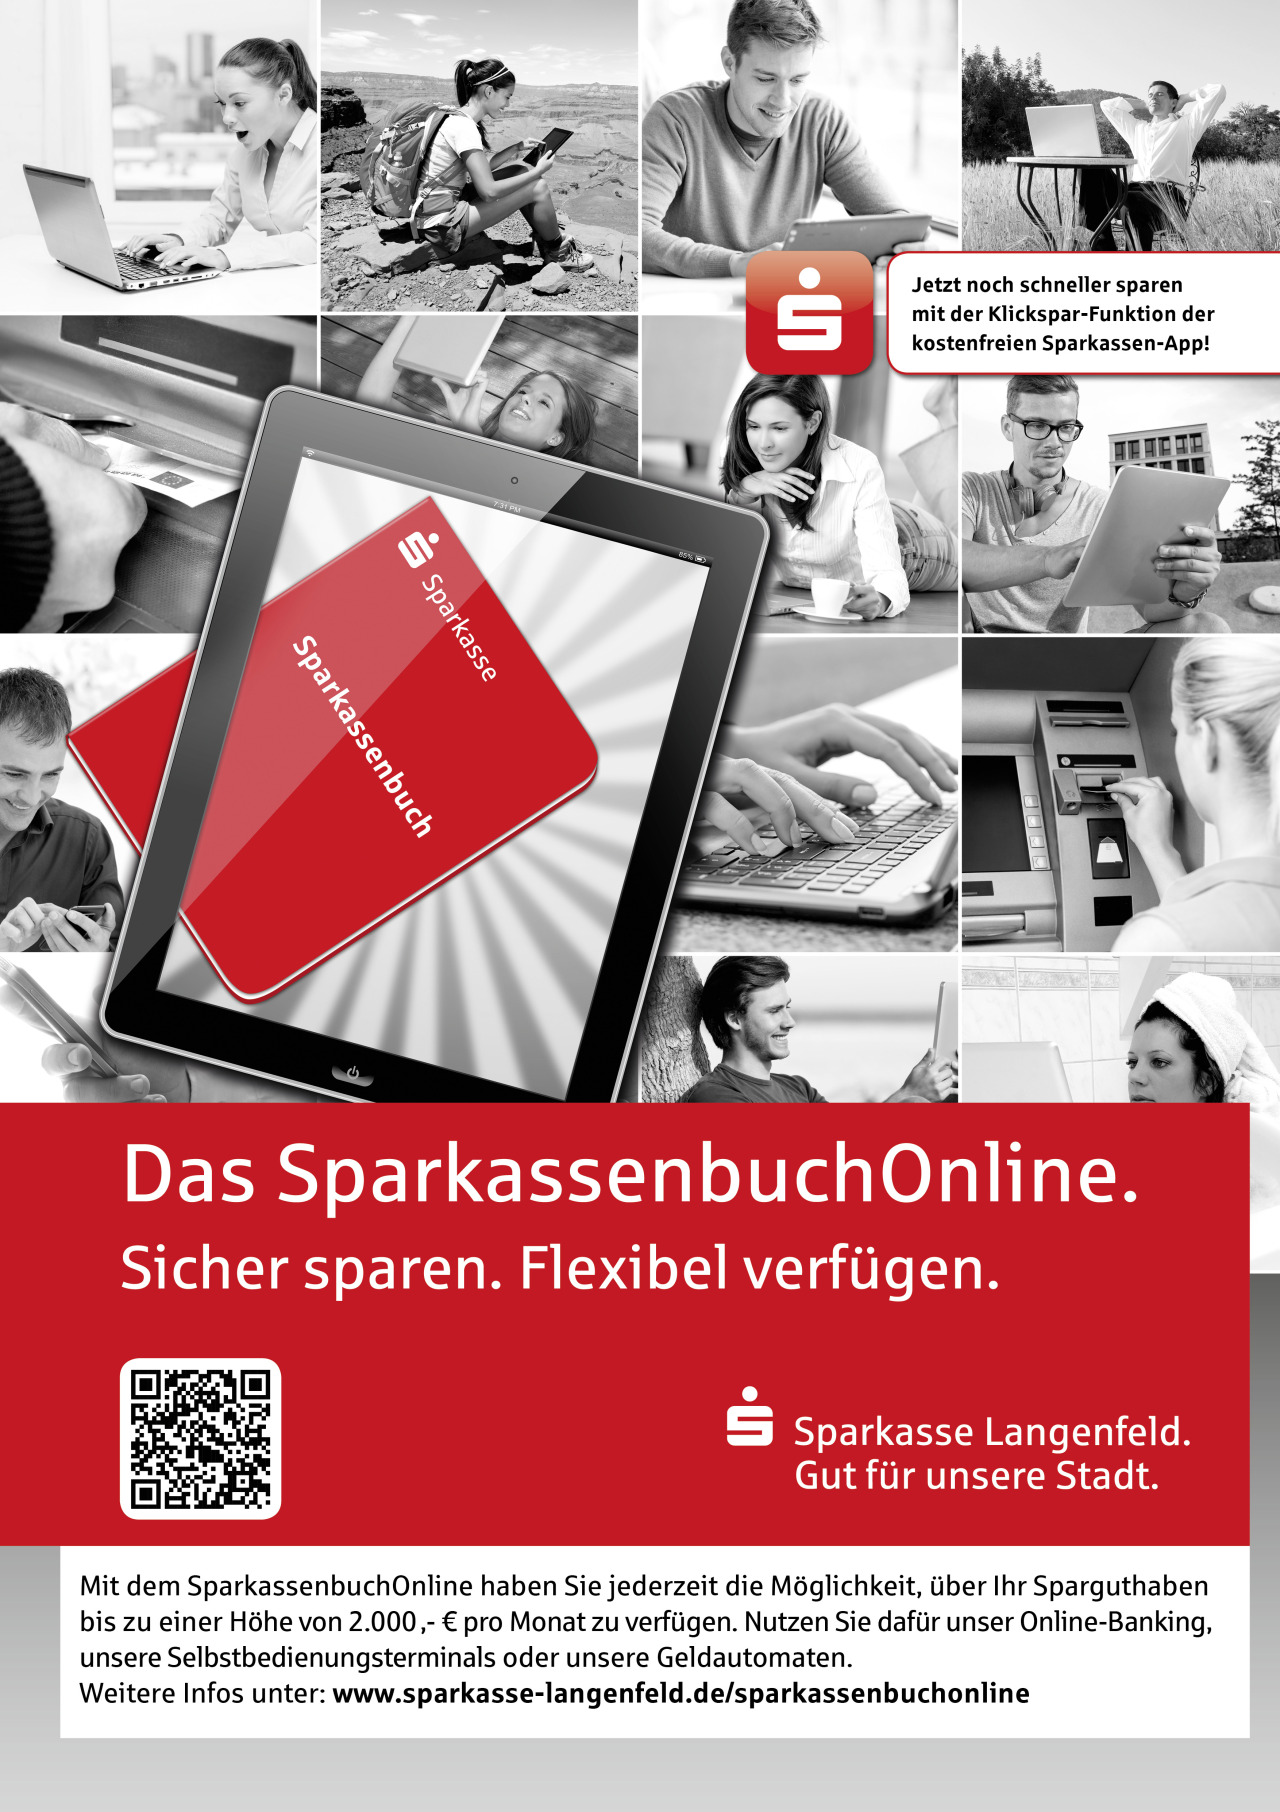 “SparkassenbuchOnline” – Kampagne